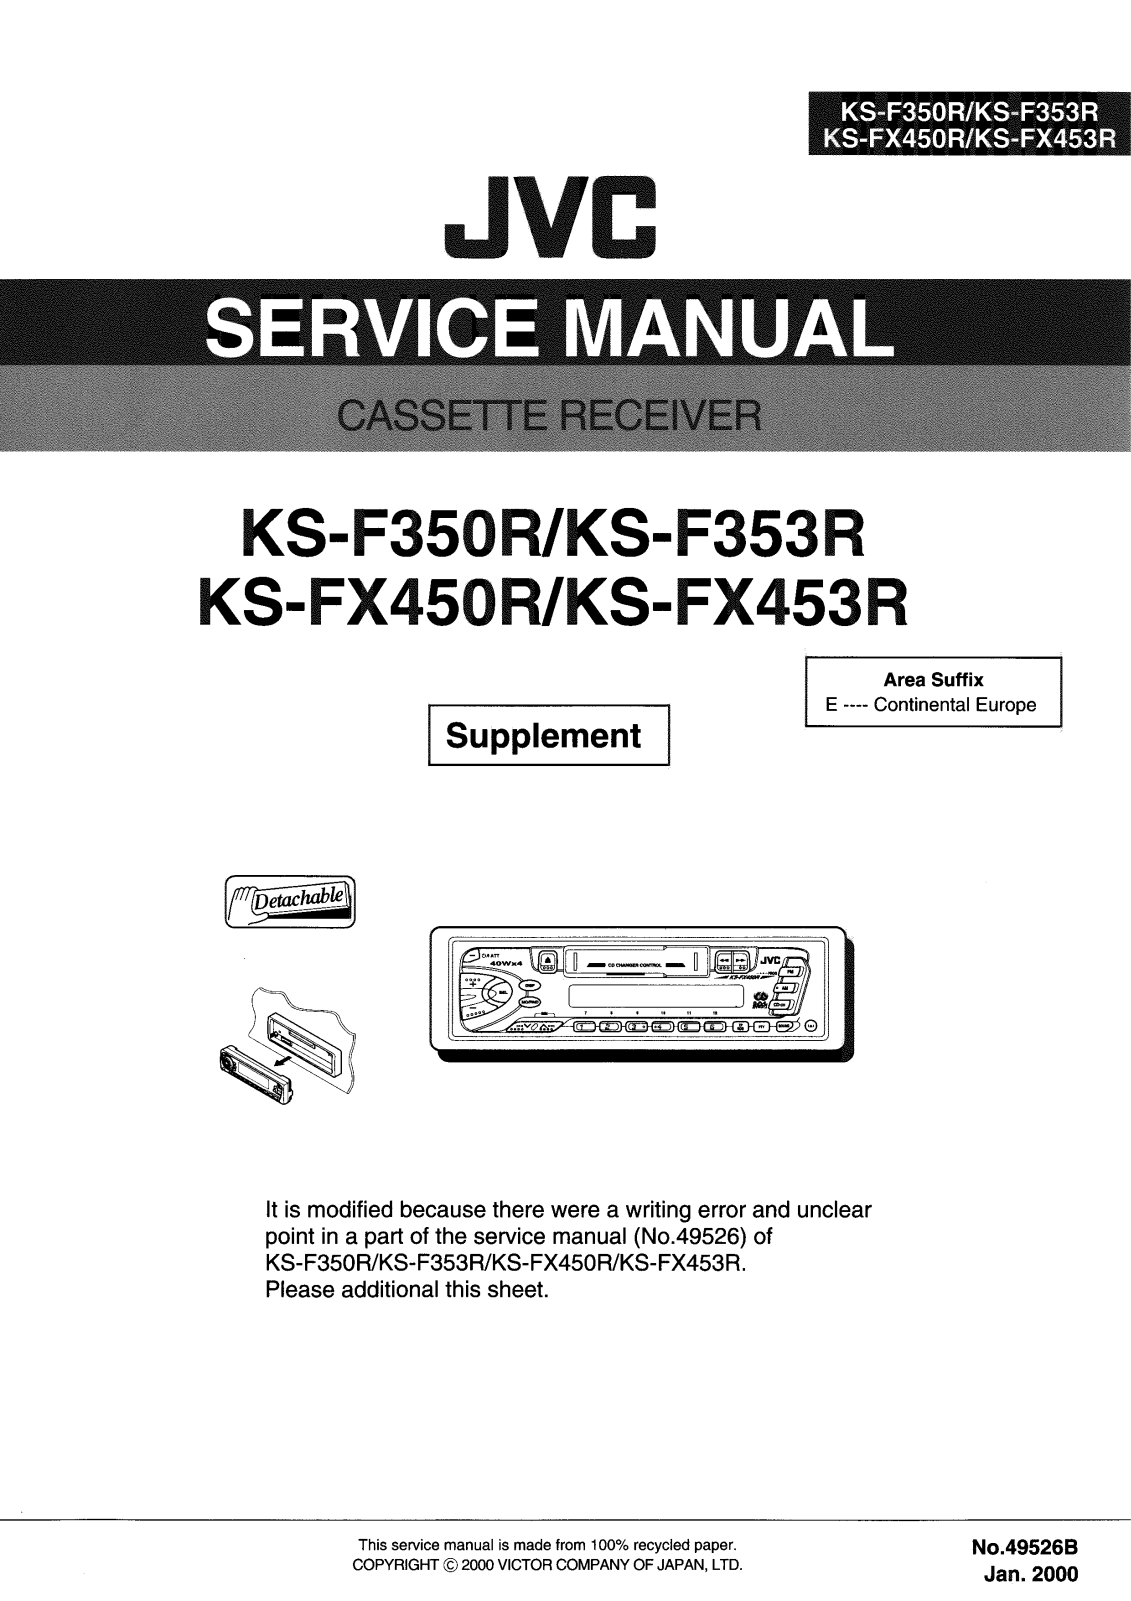 Jvc KS-F453-R, KS-F450-R, KS-F353-R, KS-F350-R Service Manual